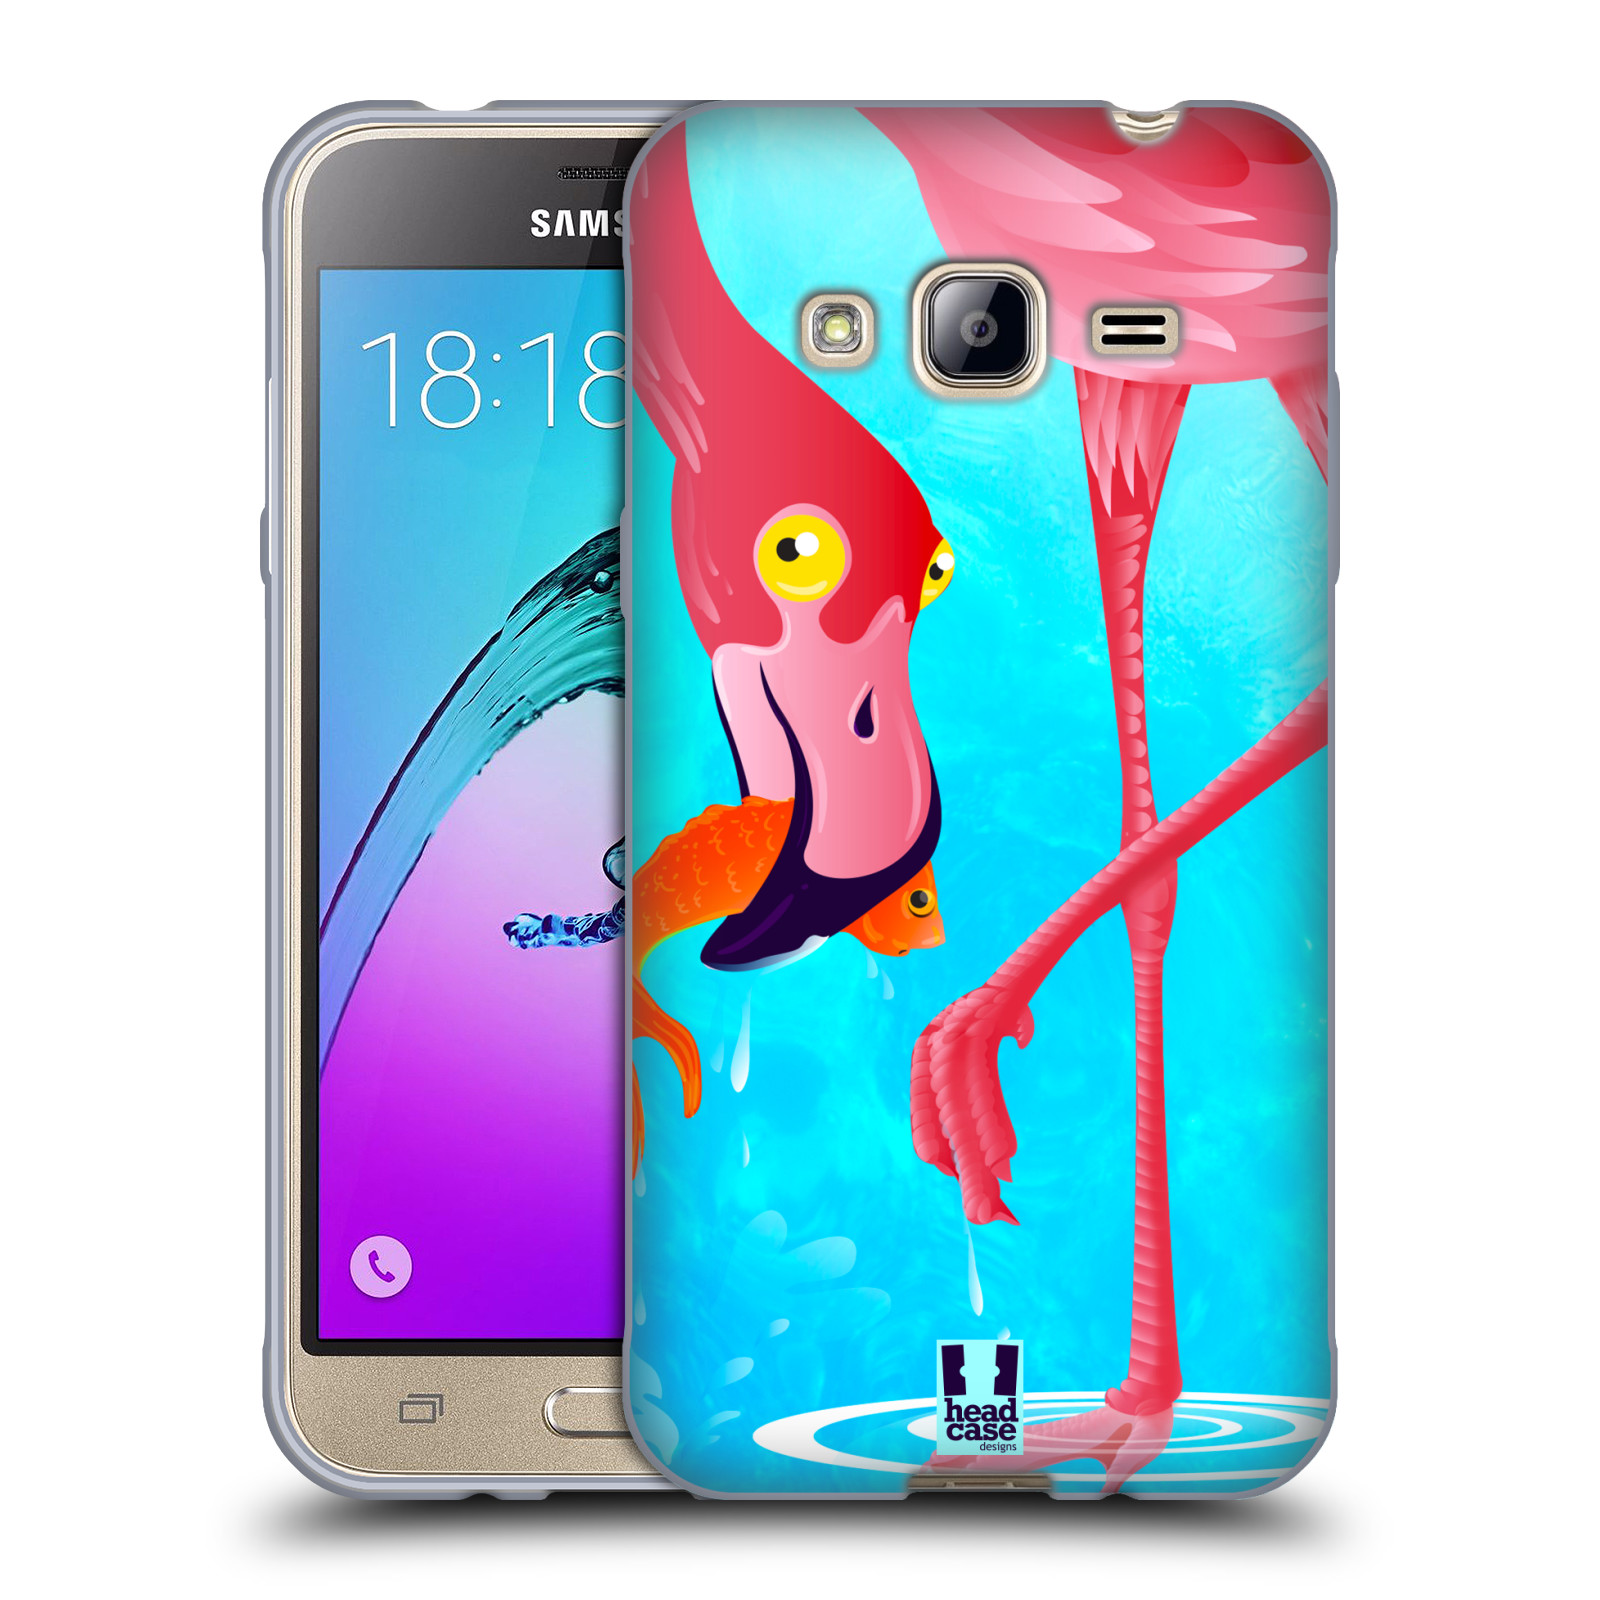 HEAD CASE silikonový obal na mobil Samsung Galaxy J3, J3 2016 vzor dlouhé nohy kreslená zvířátka plameňák